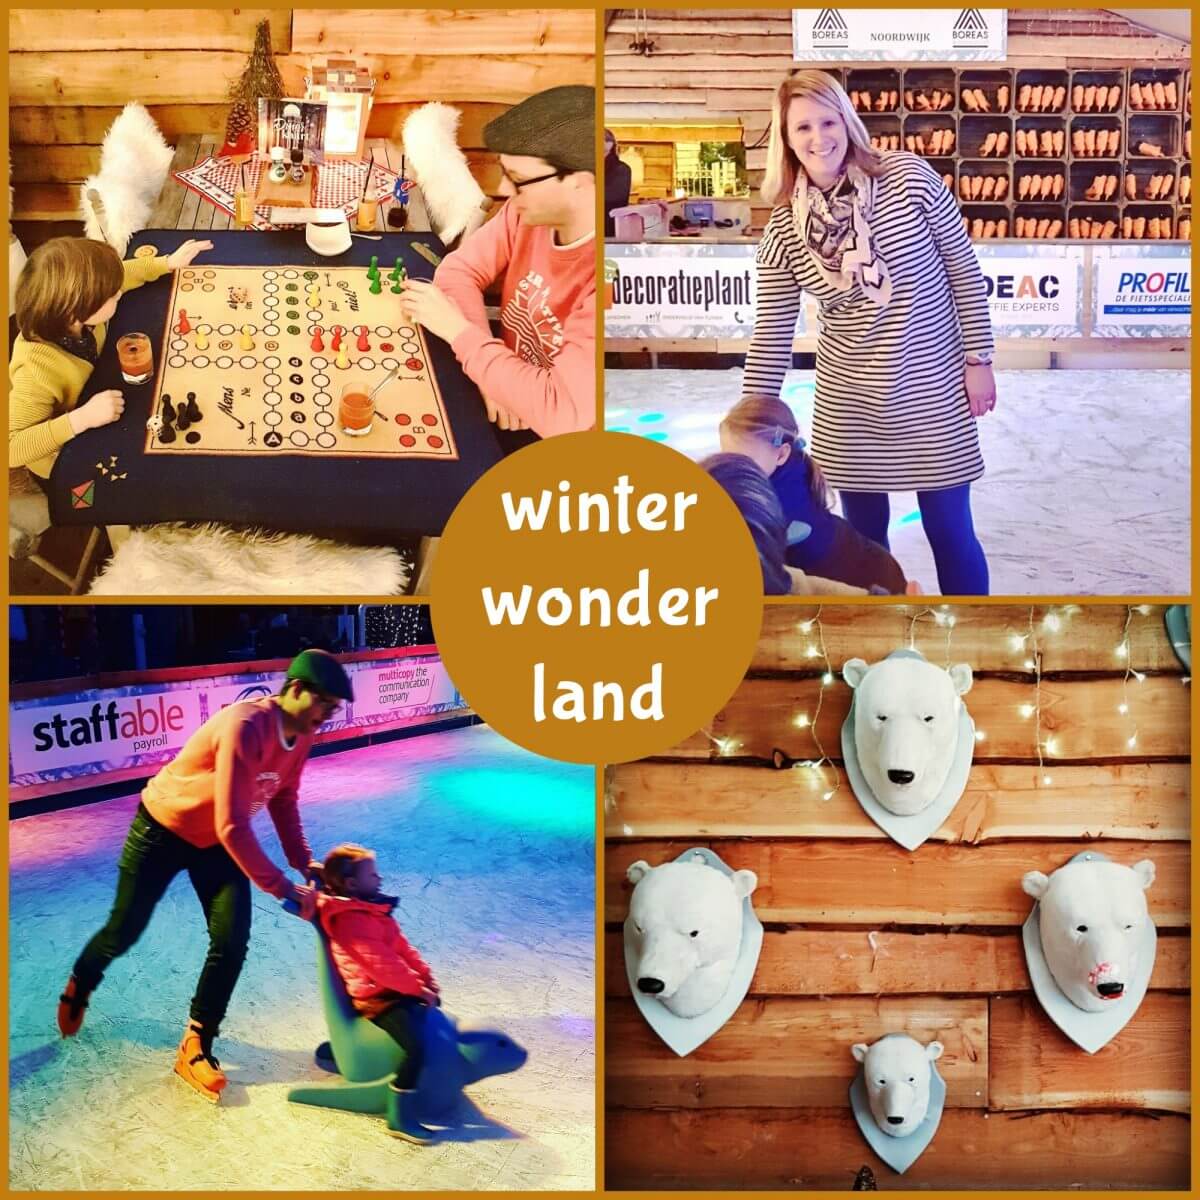 Schaatsen, spelletjes doen en lekker eten aan zee bij Winter Wonderland